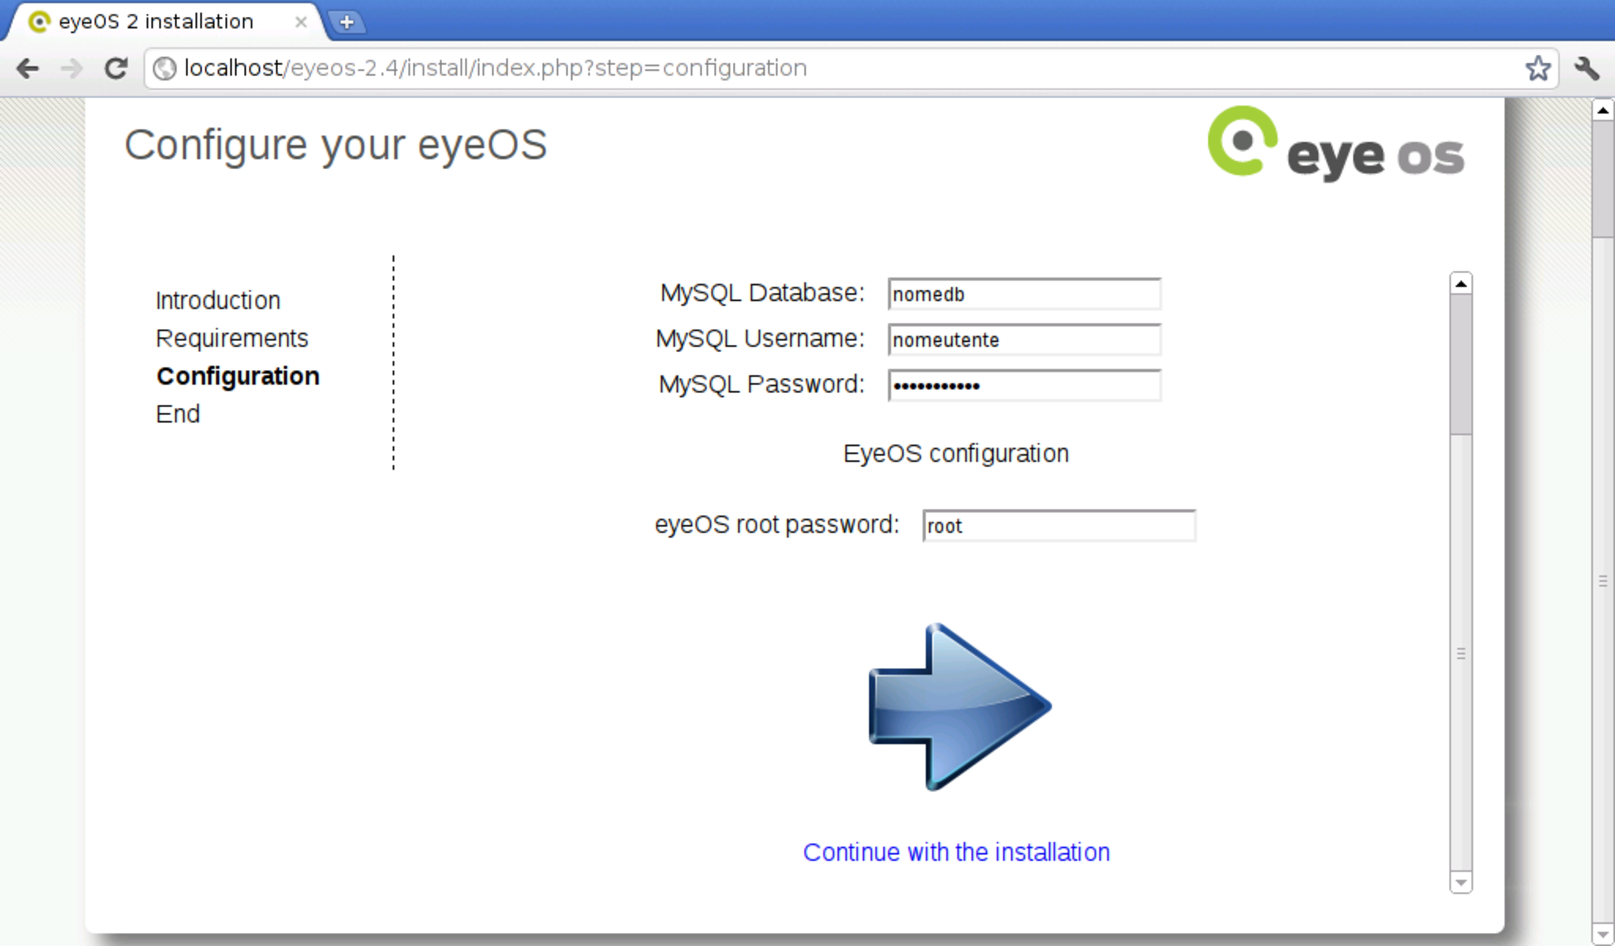 eyeOS 2: definizione di base di dati e utenza amministrativa